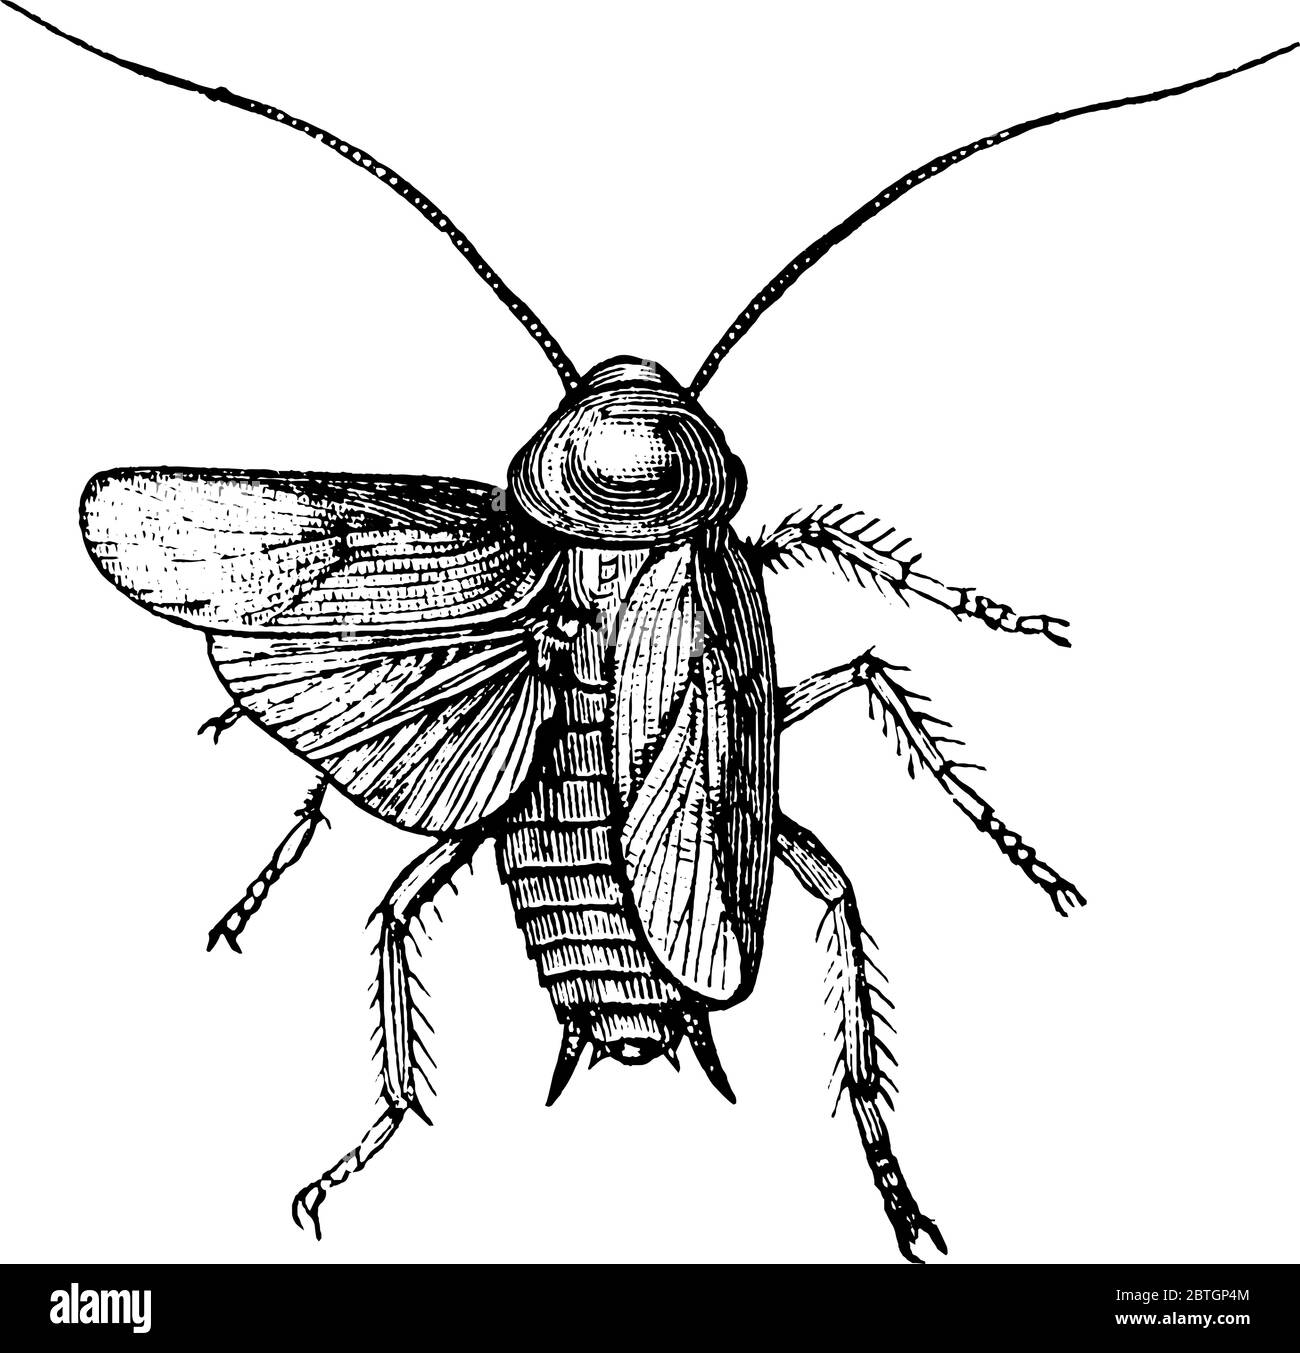 Cockroach est un insecte avec deux ailes et deux longues antennes, dessin de ligne vintage ou illustration de gravure. Illustration de Vecteur